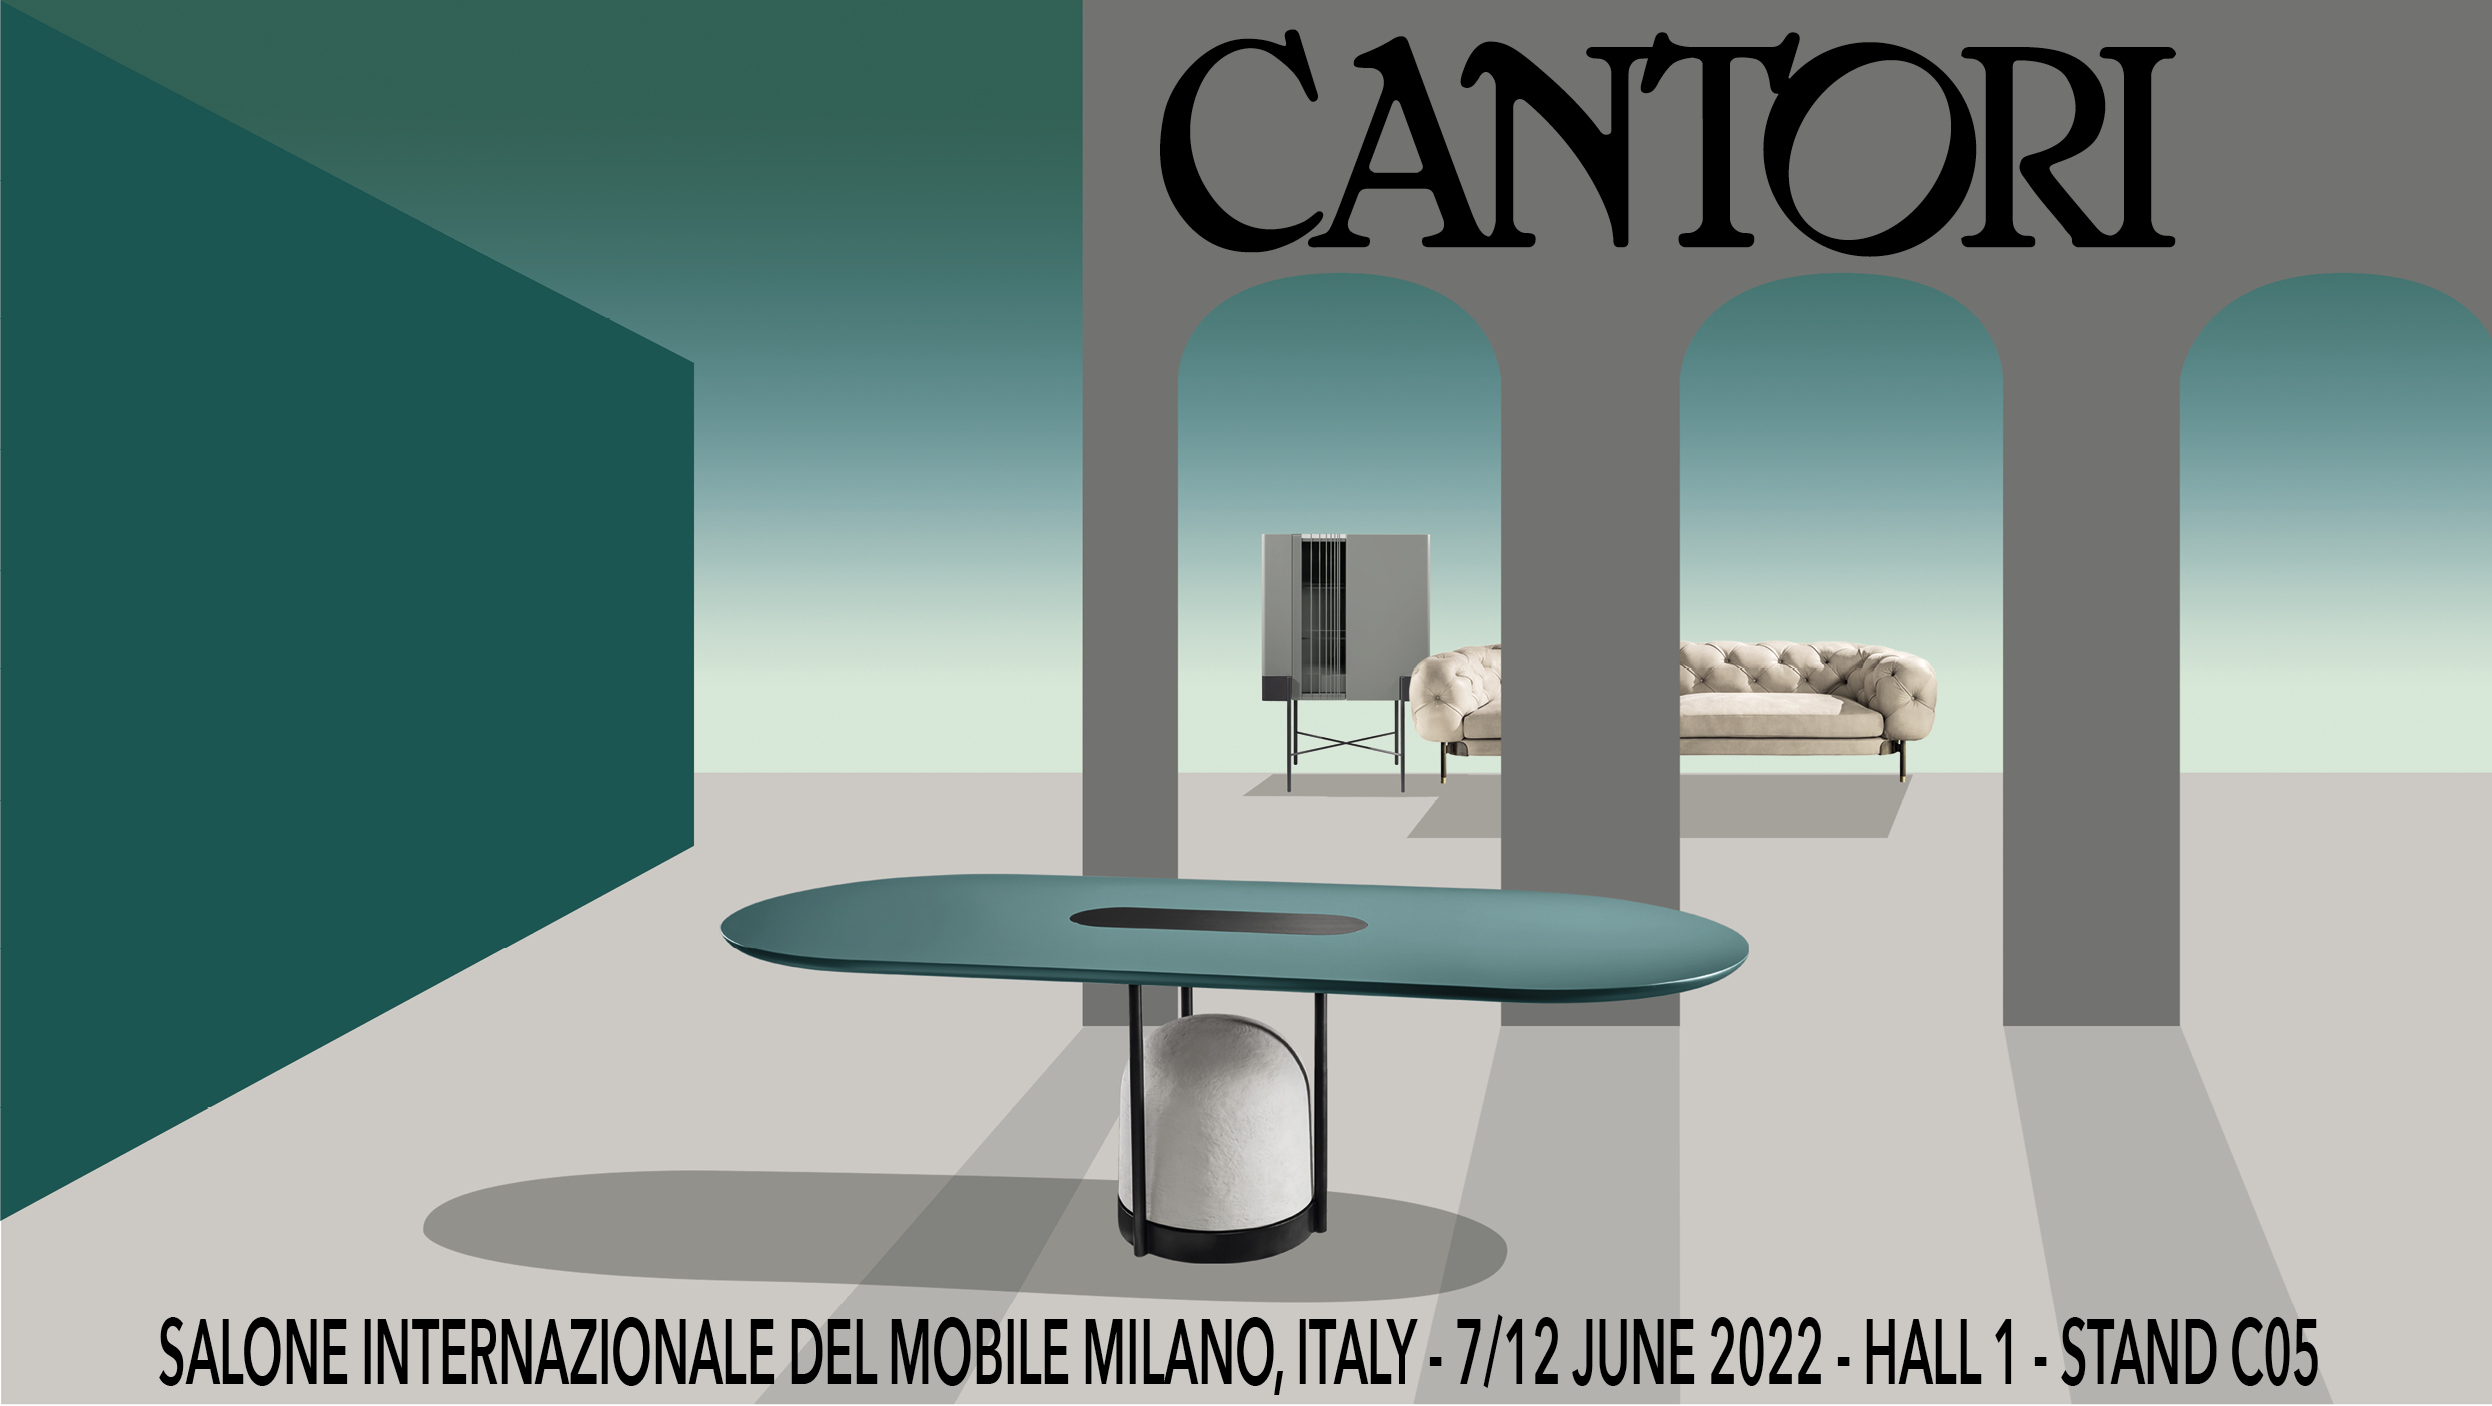 20/04/2022 Cantori al Salone del Mobile di Milano 2022 - Cantori